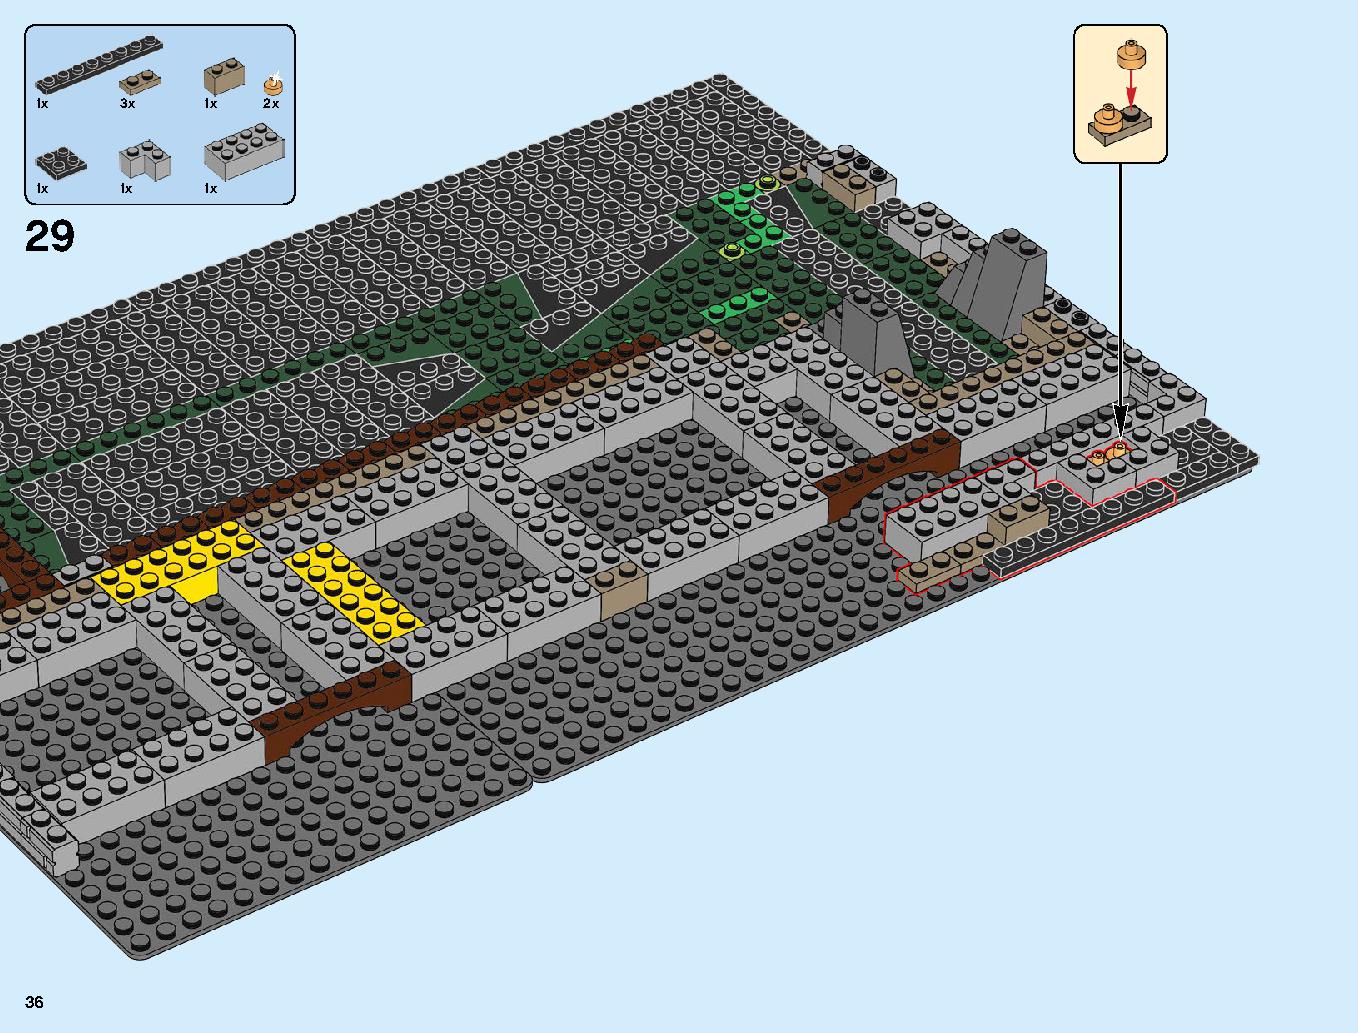 ニンジャゴーシティ・ポートパーク 70657 レゴの商品情報 レゴの説明書・組立方法 36 page